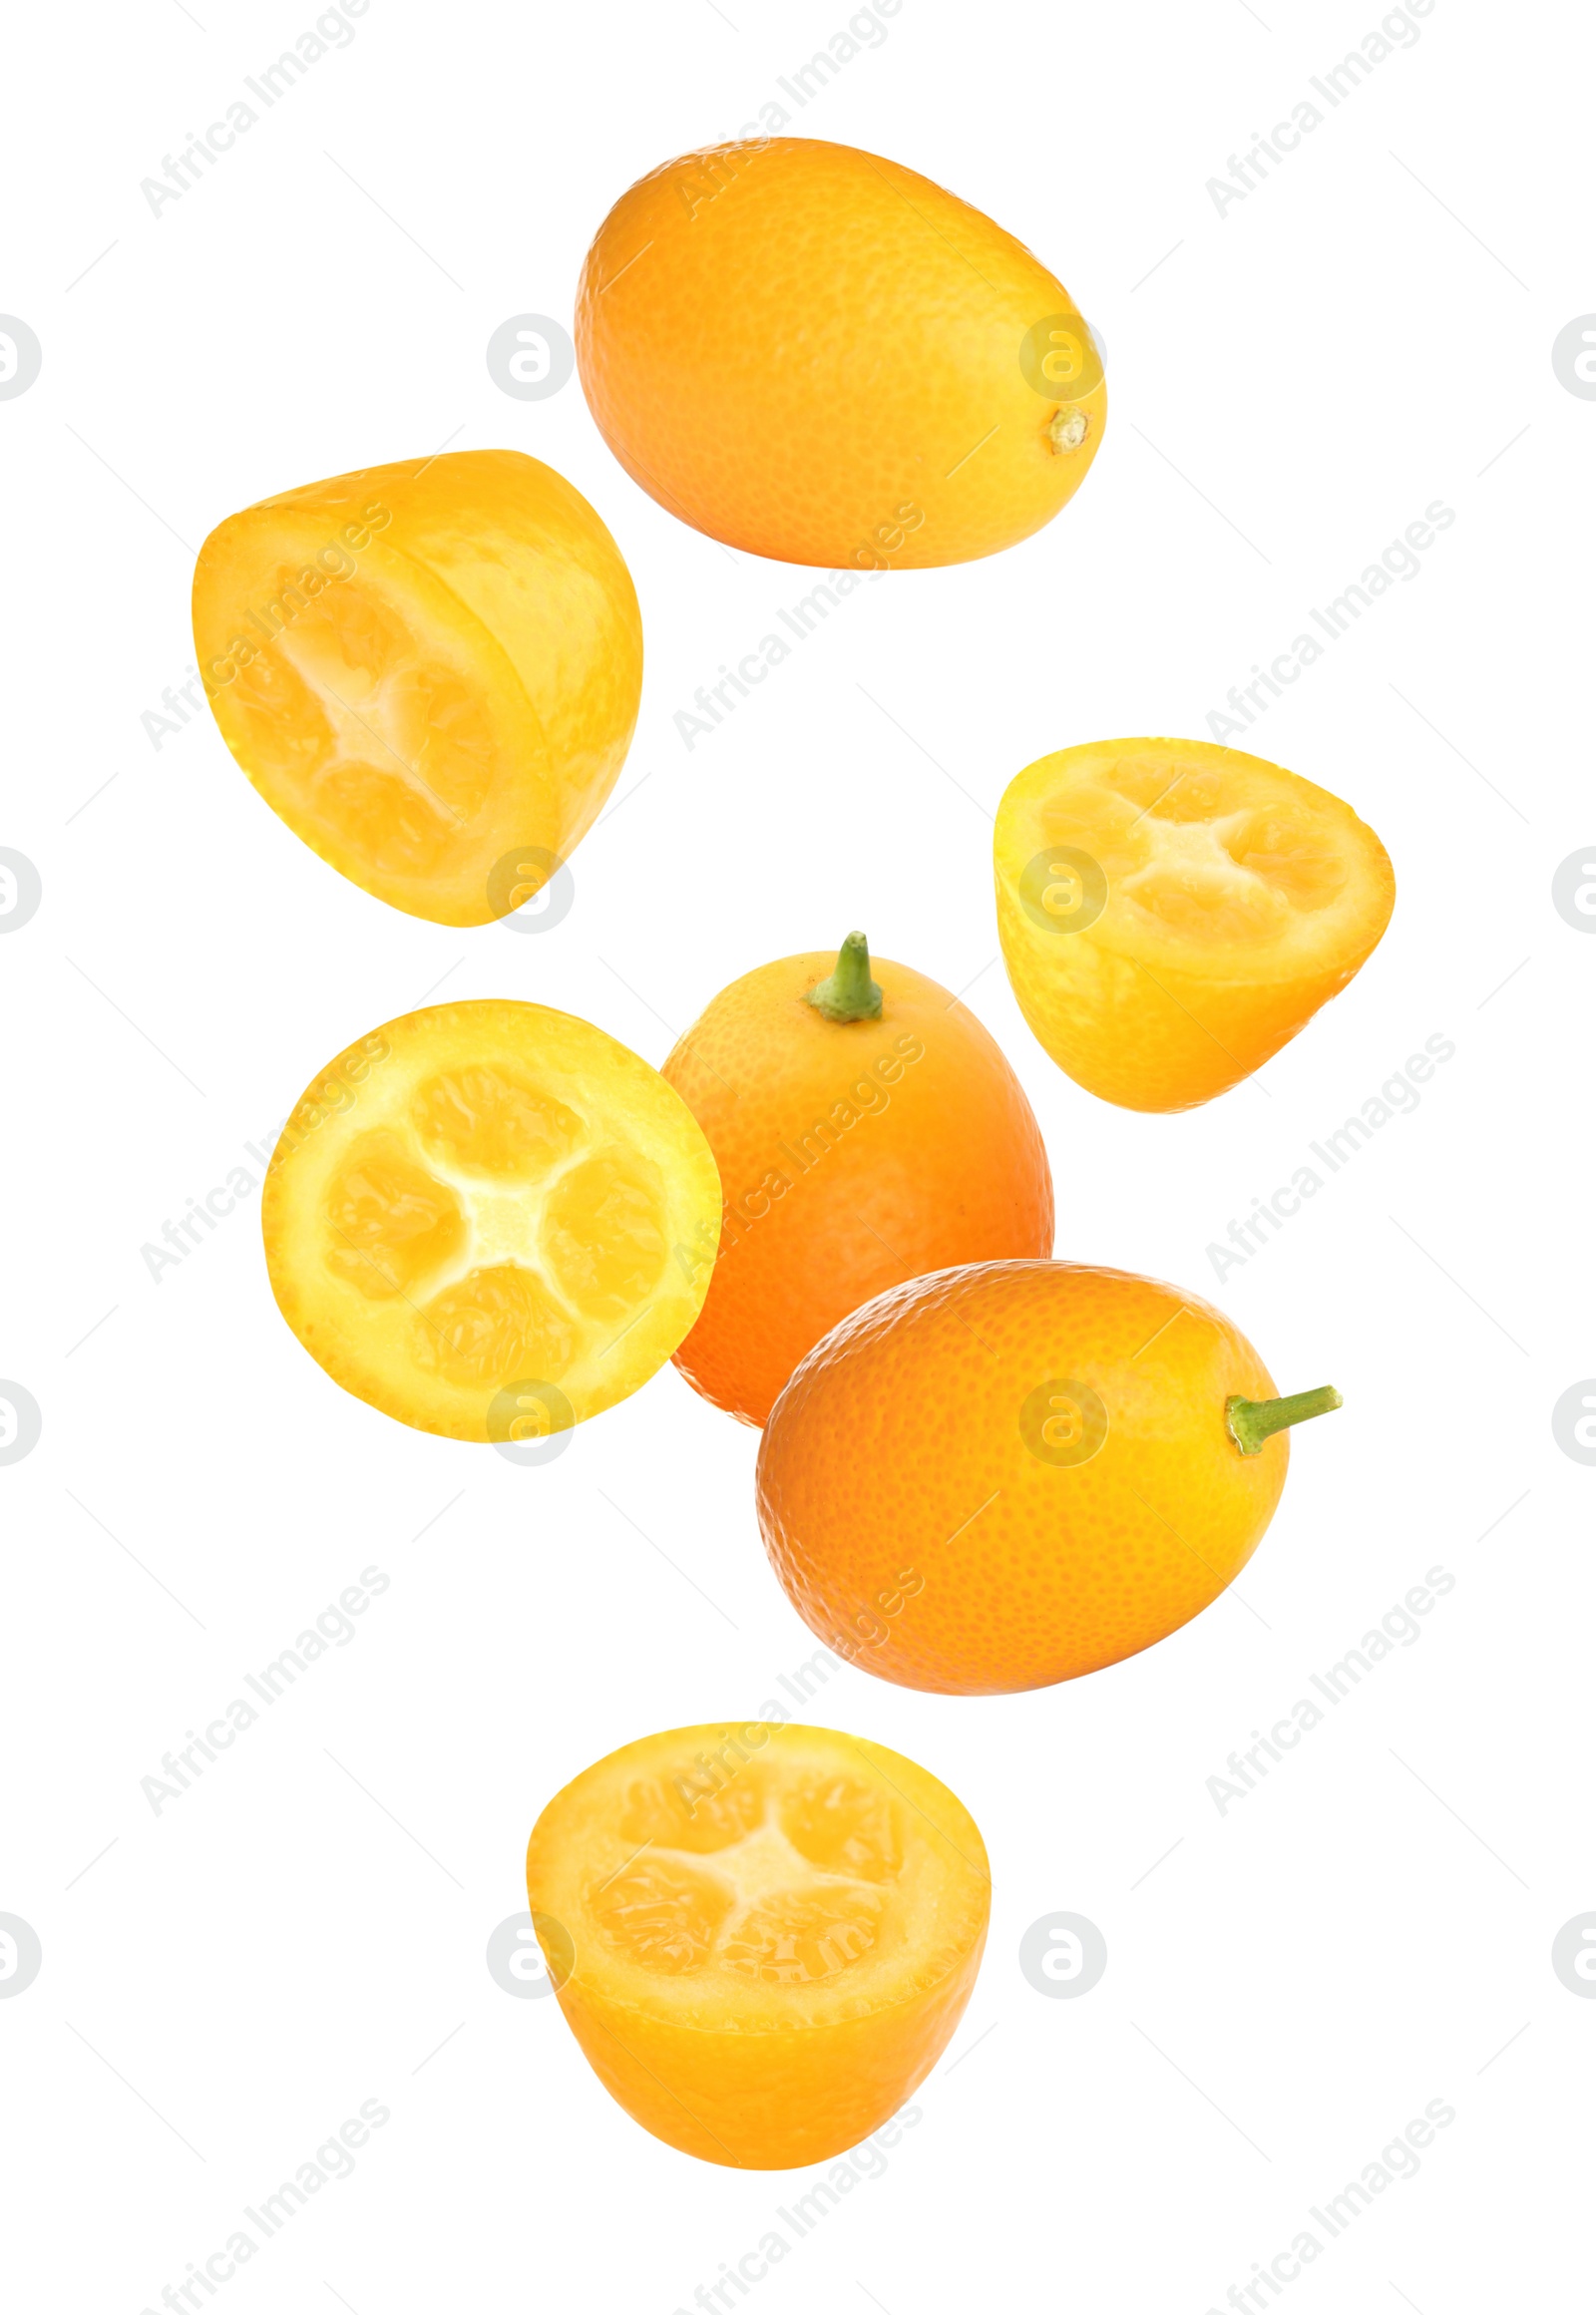 Image of Fresh ripe kumquat fruits falling on white background 